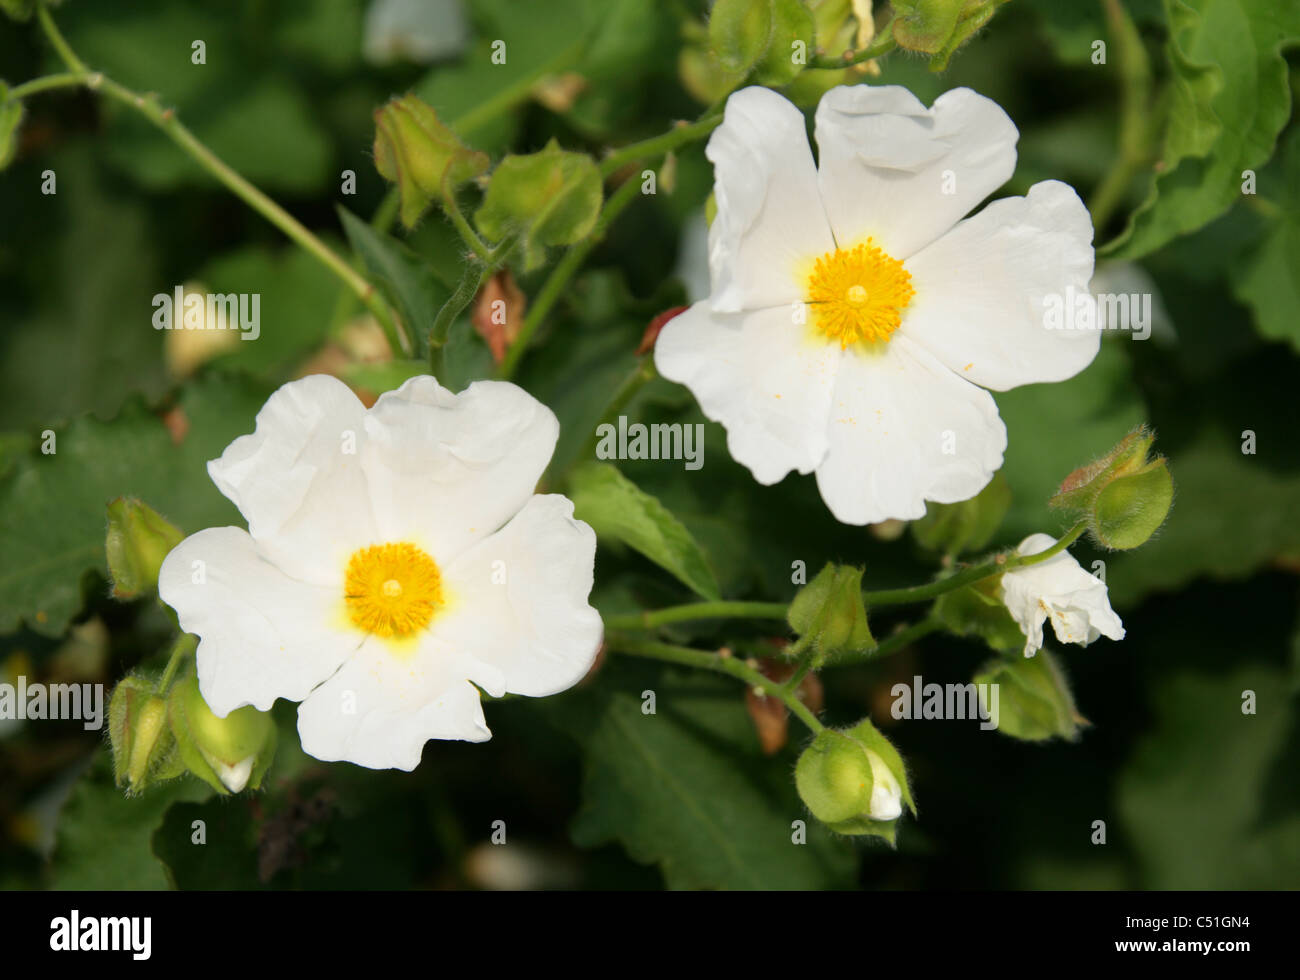 Rockrose, Cistus populifolius, Cistaceae. Stock Photo